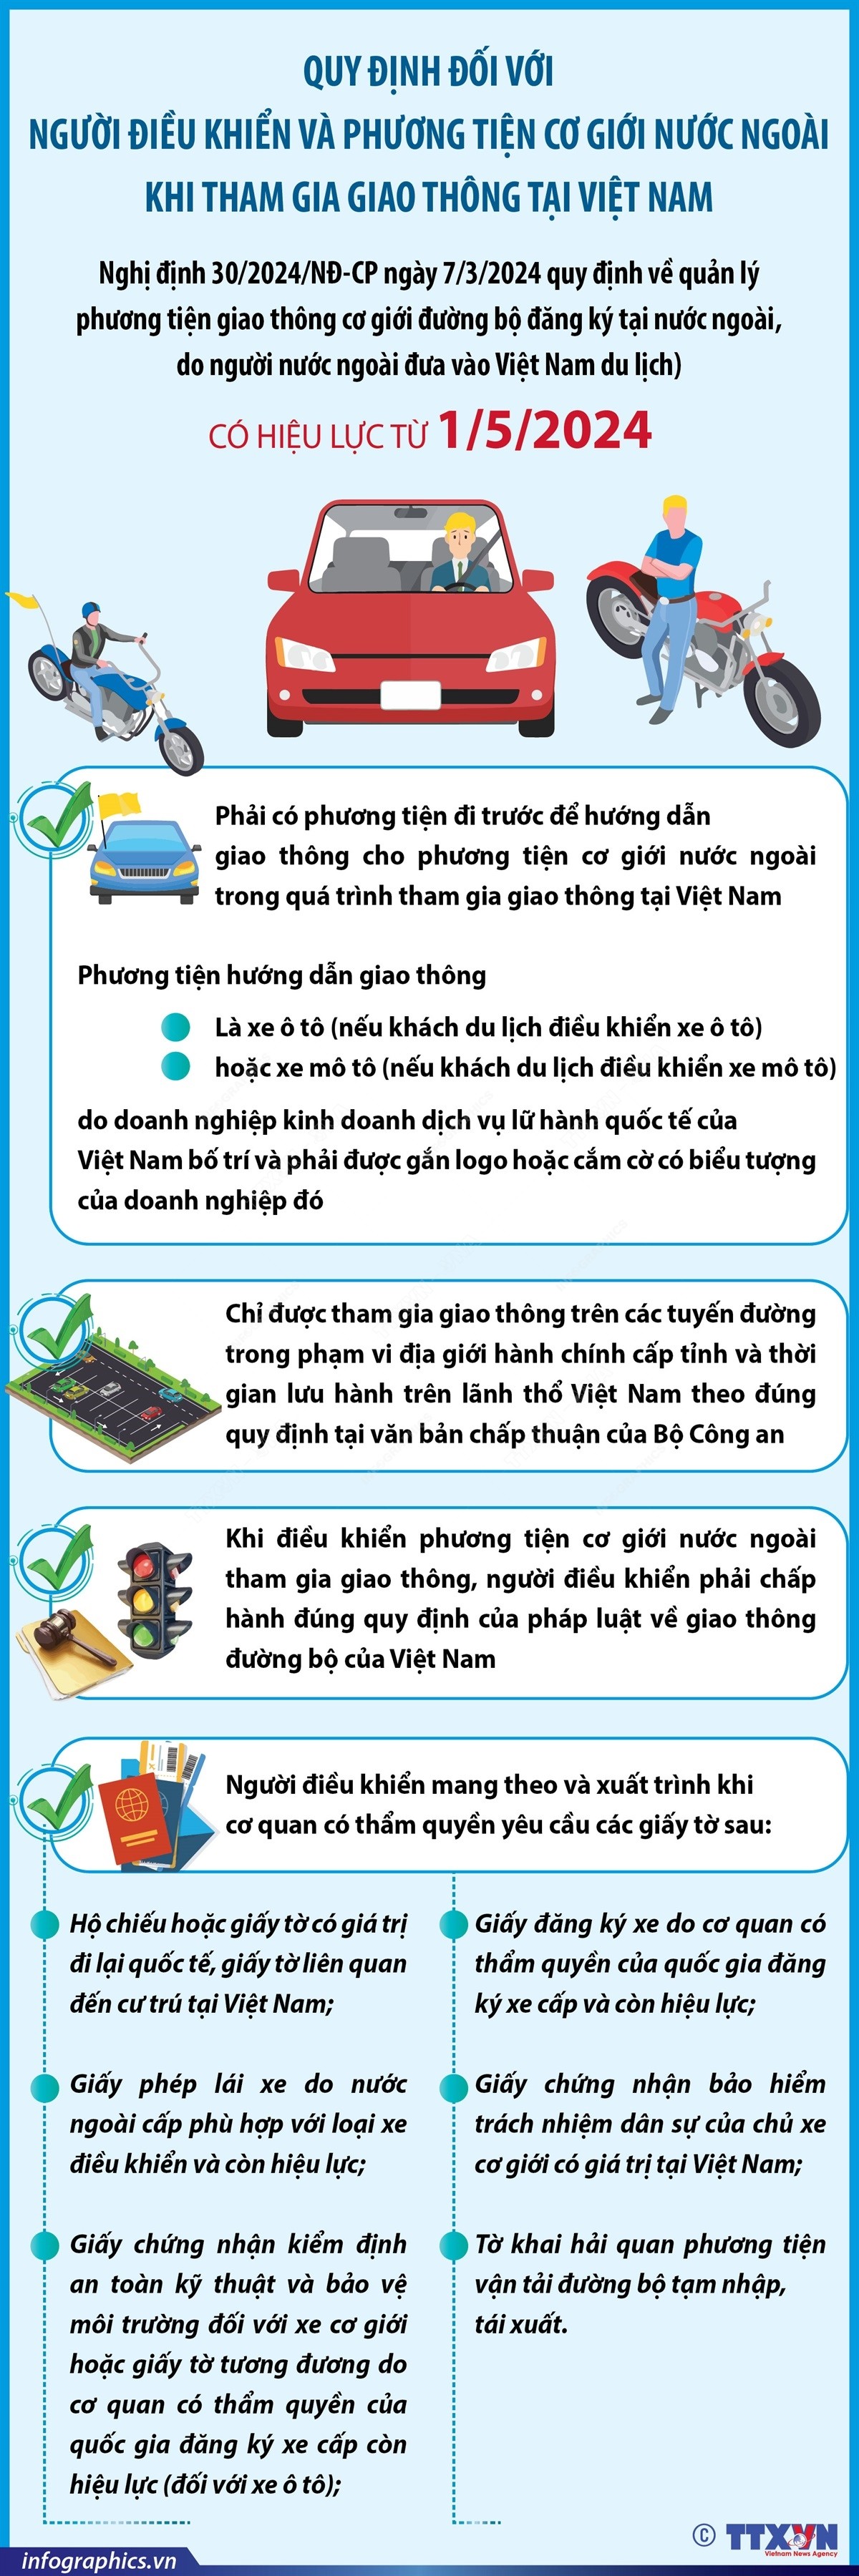 [Inforgraphic] Quản lý phương tiện cơ giới nước ngoài tham gia giao thông tại Việt Nam